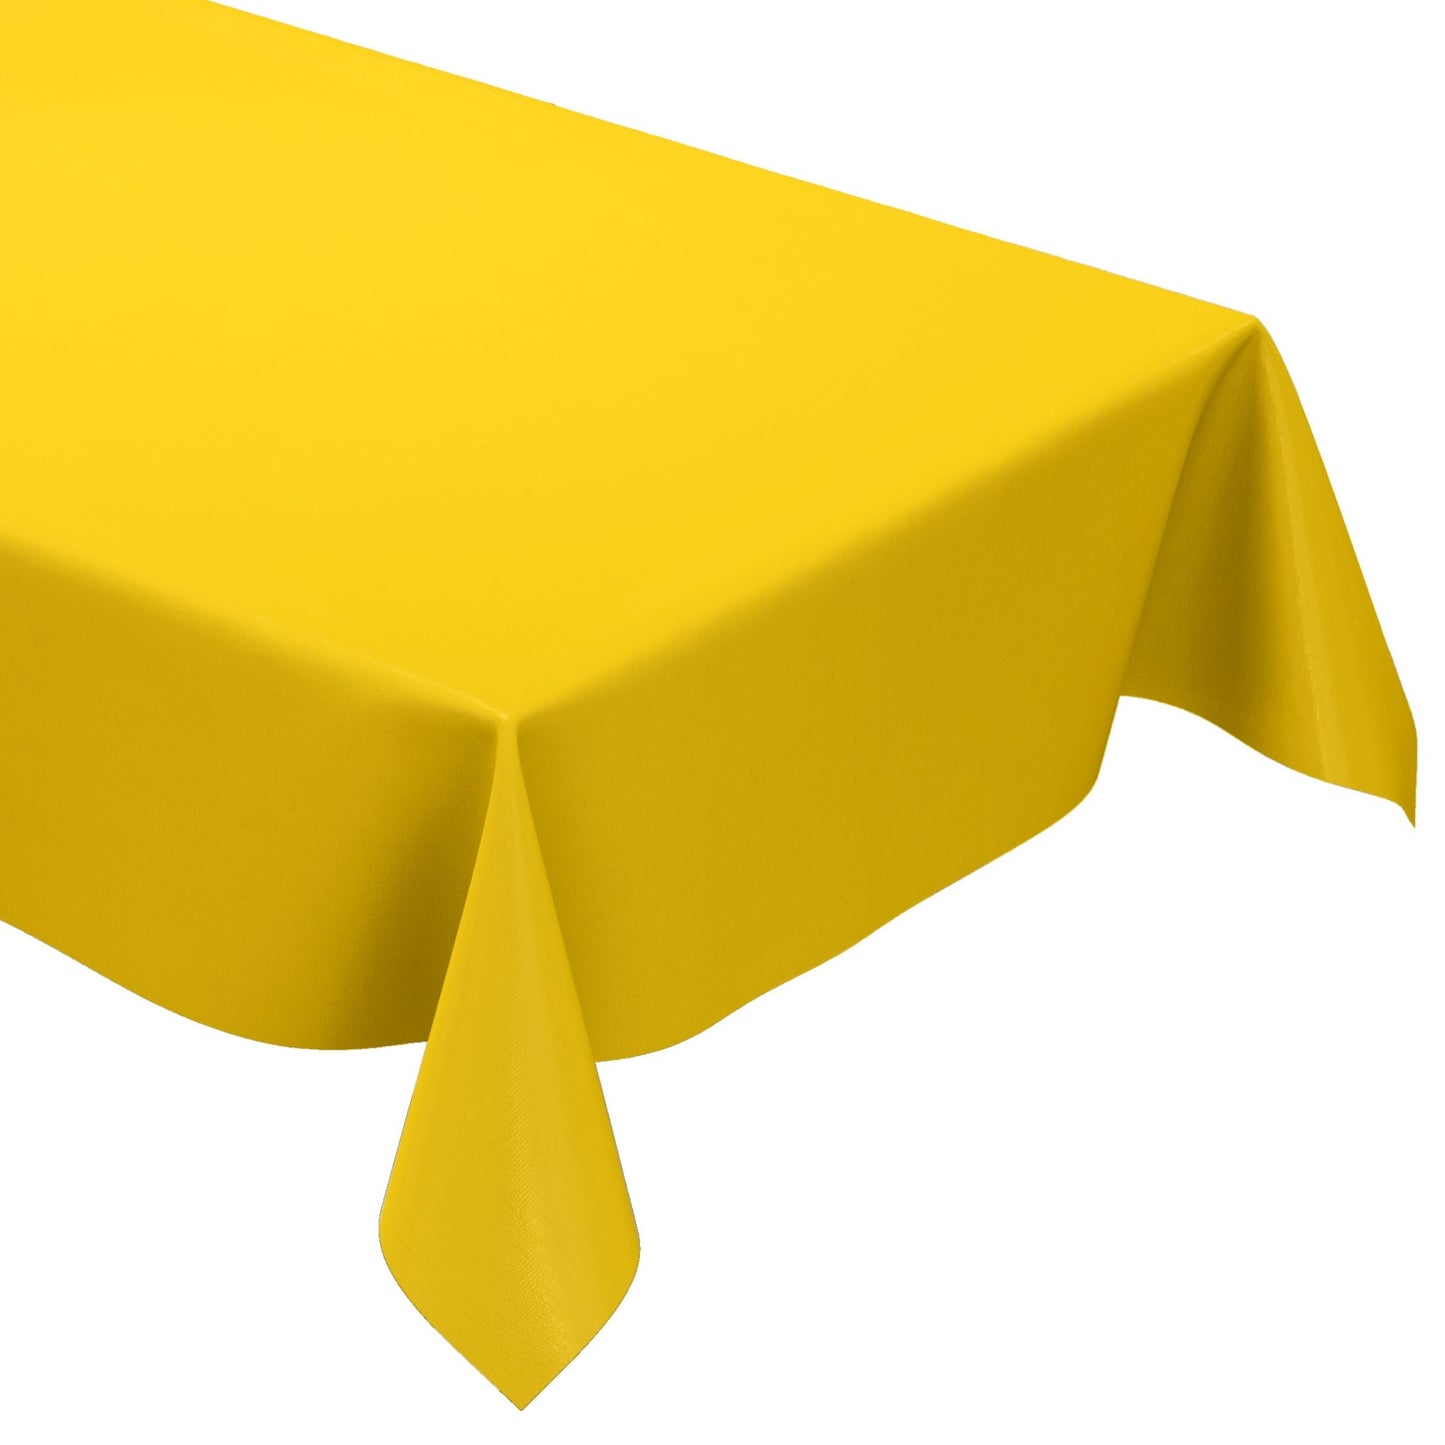 KEVKUS Wachstuch Tischdecke uni 109 unifarben einfarbig gelb eckig rund oval